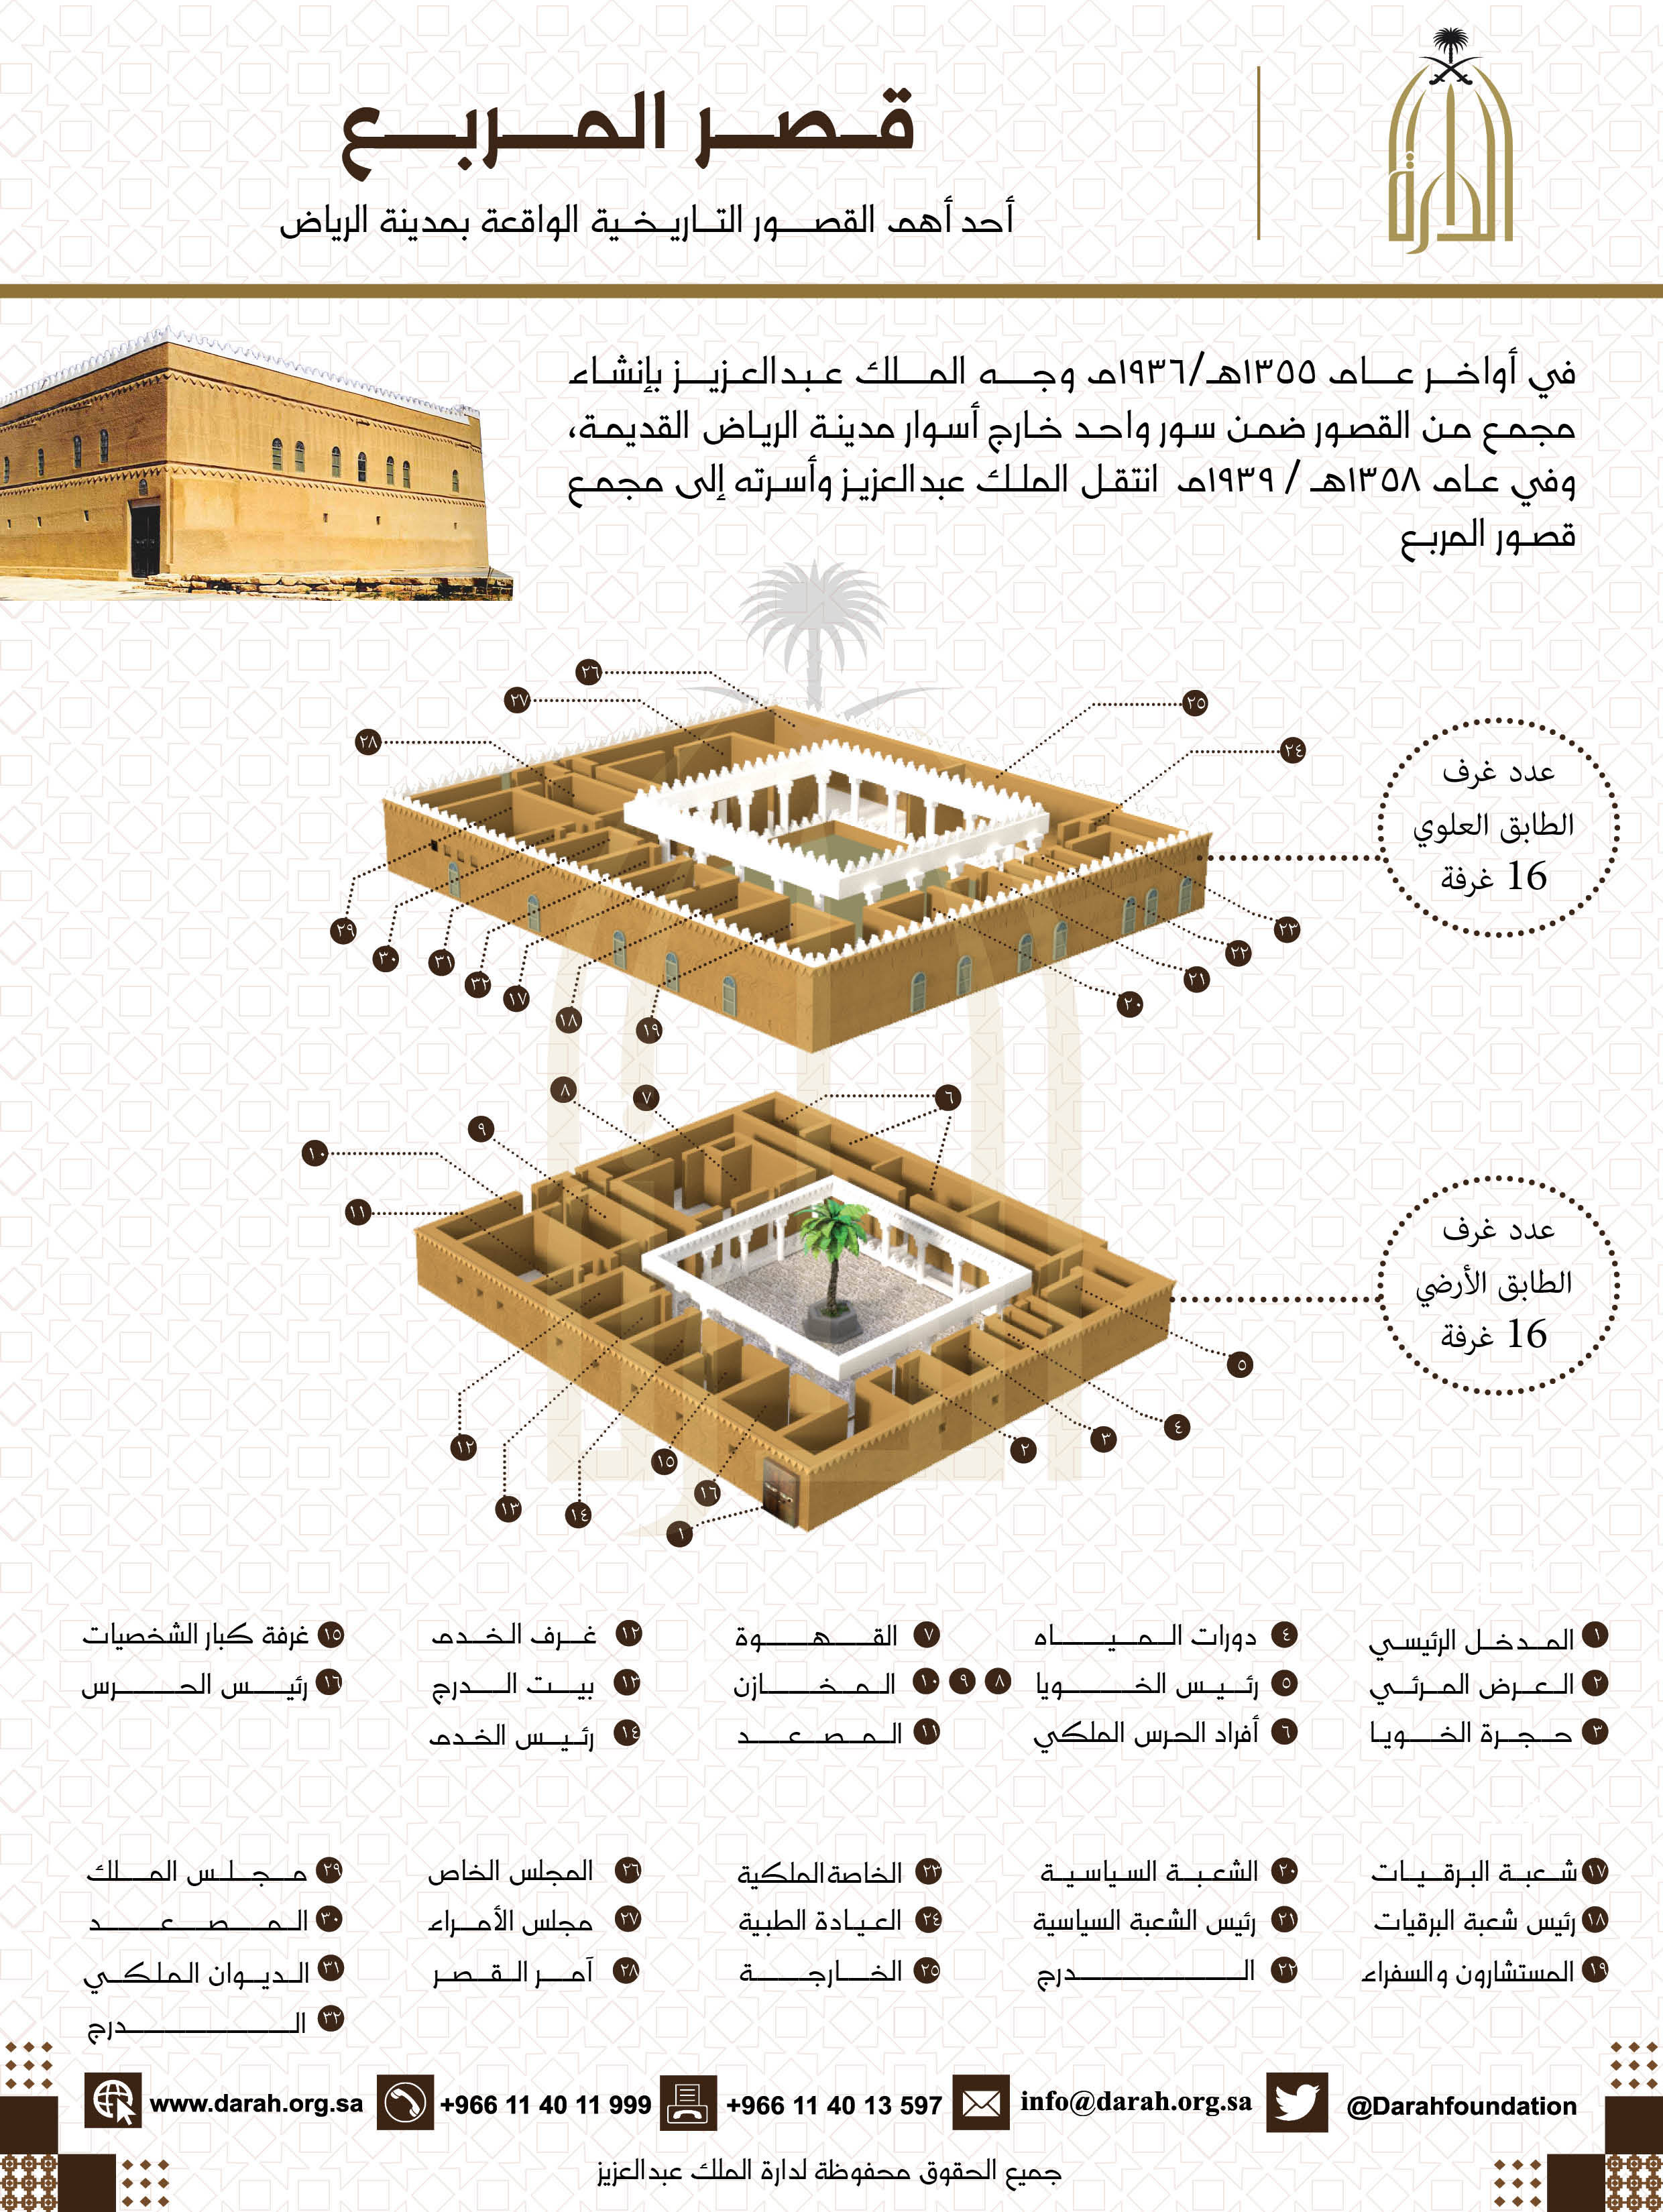 دارة الملك عبدالعزيز قصر المربع التاريخي نموذج العمارة المحلية وإدارة الدولة